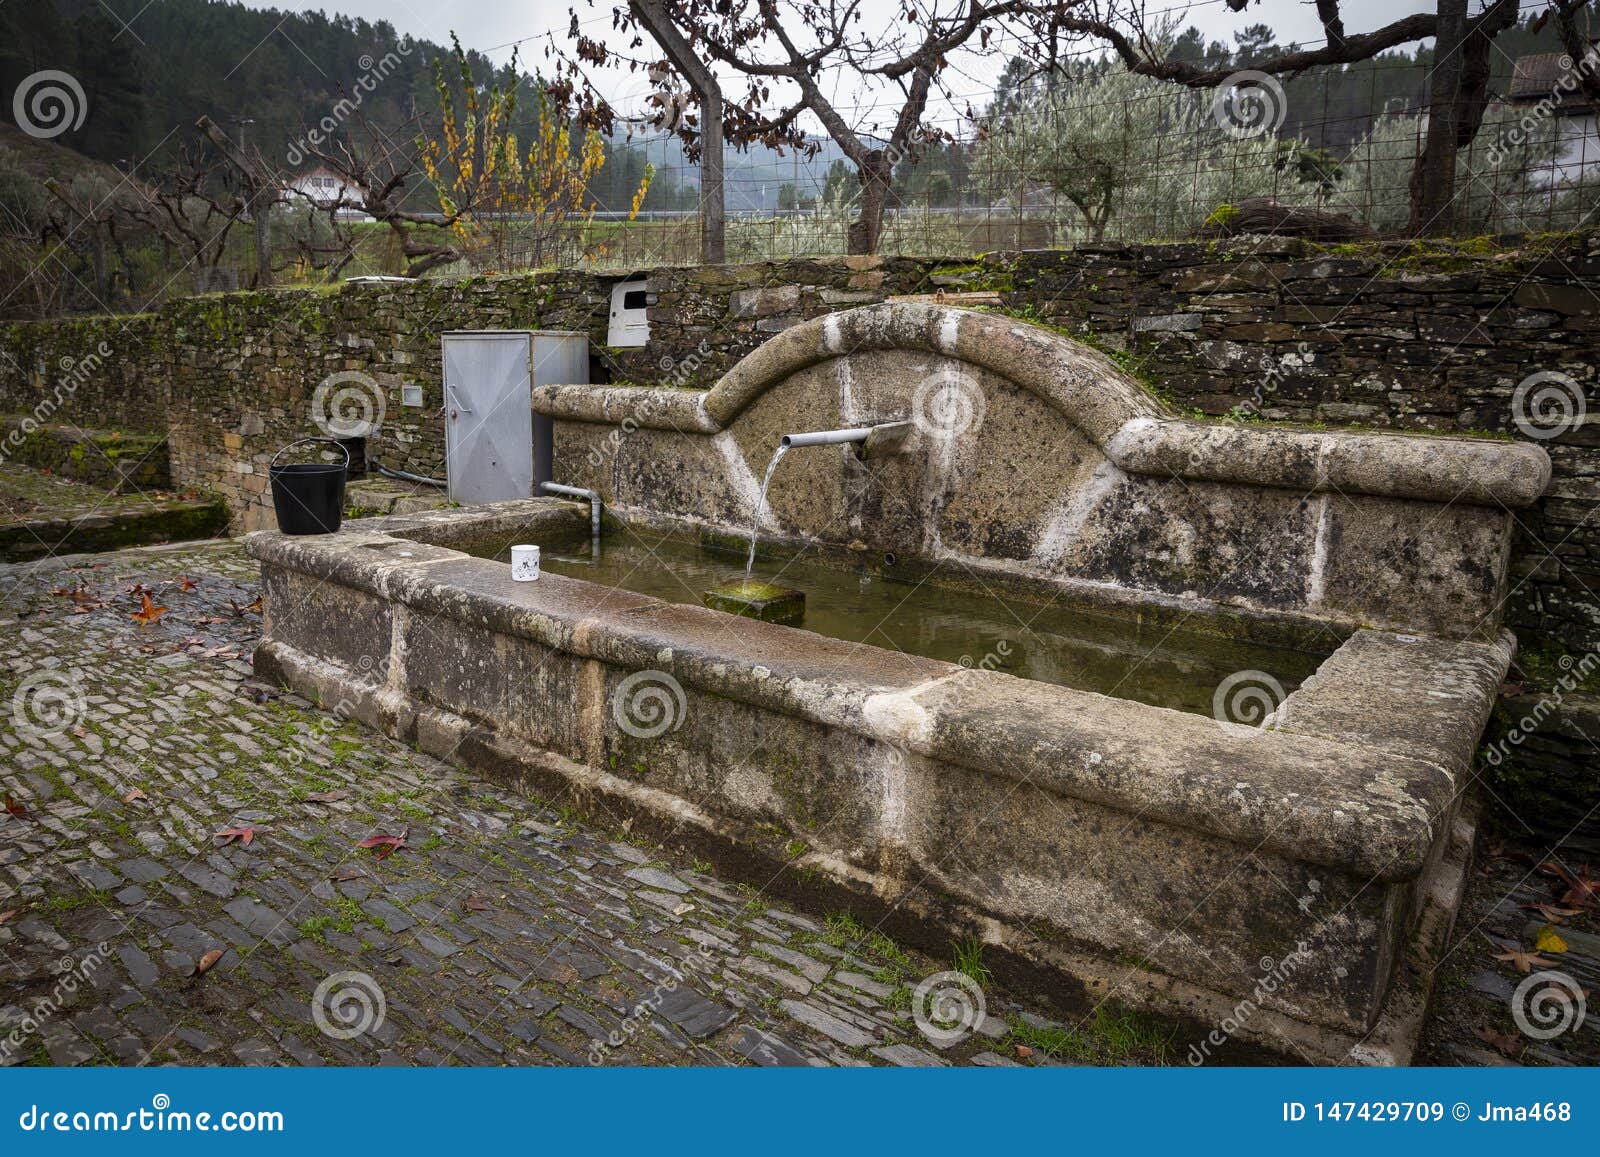 antique water fountain in barroca schist village